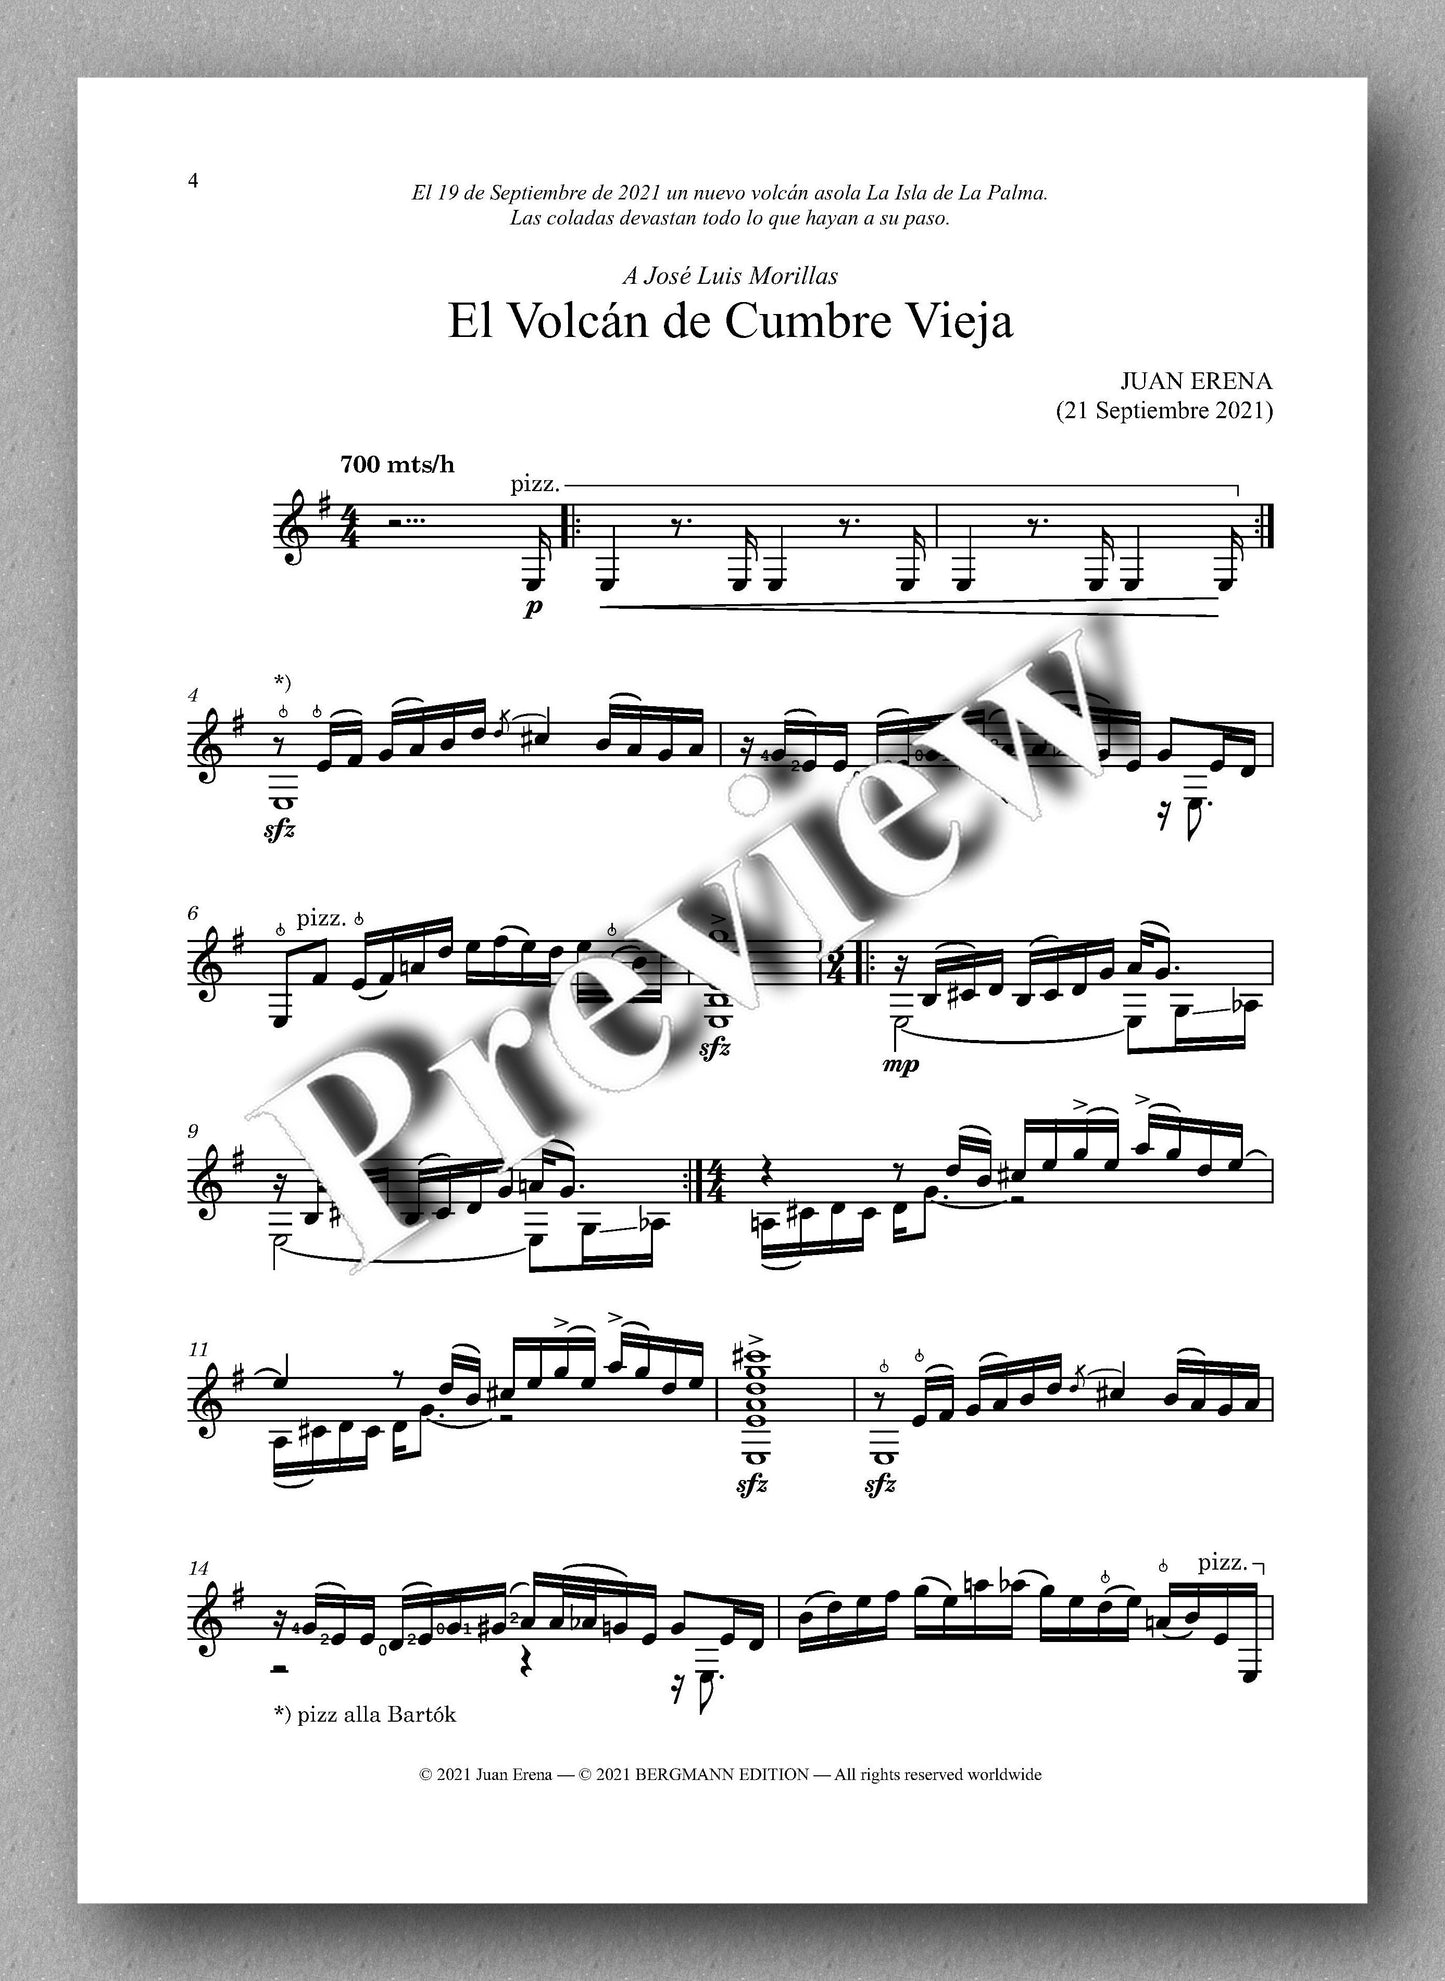 Erena, El Volcán de Cumbre Vieja - music score 1